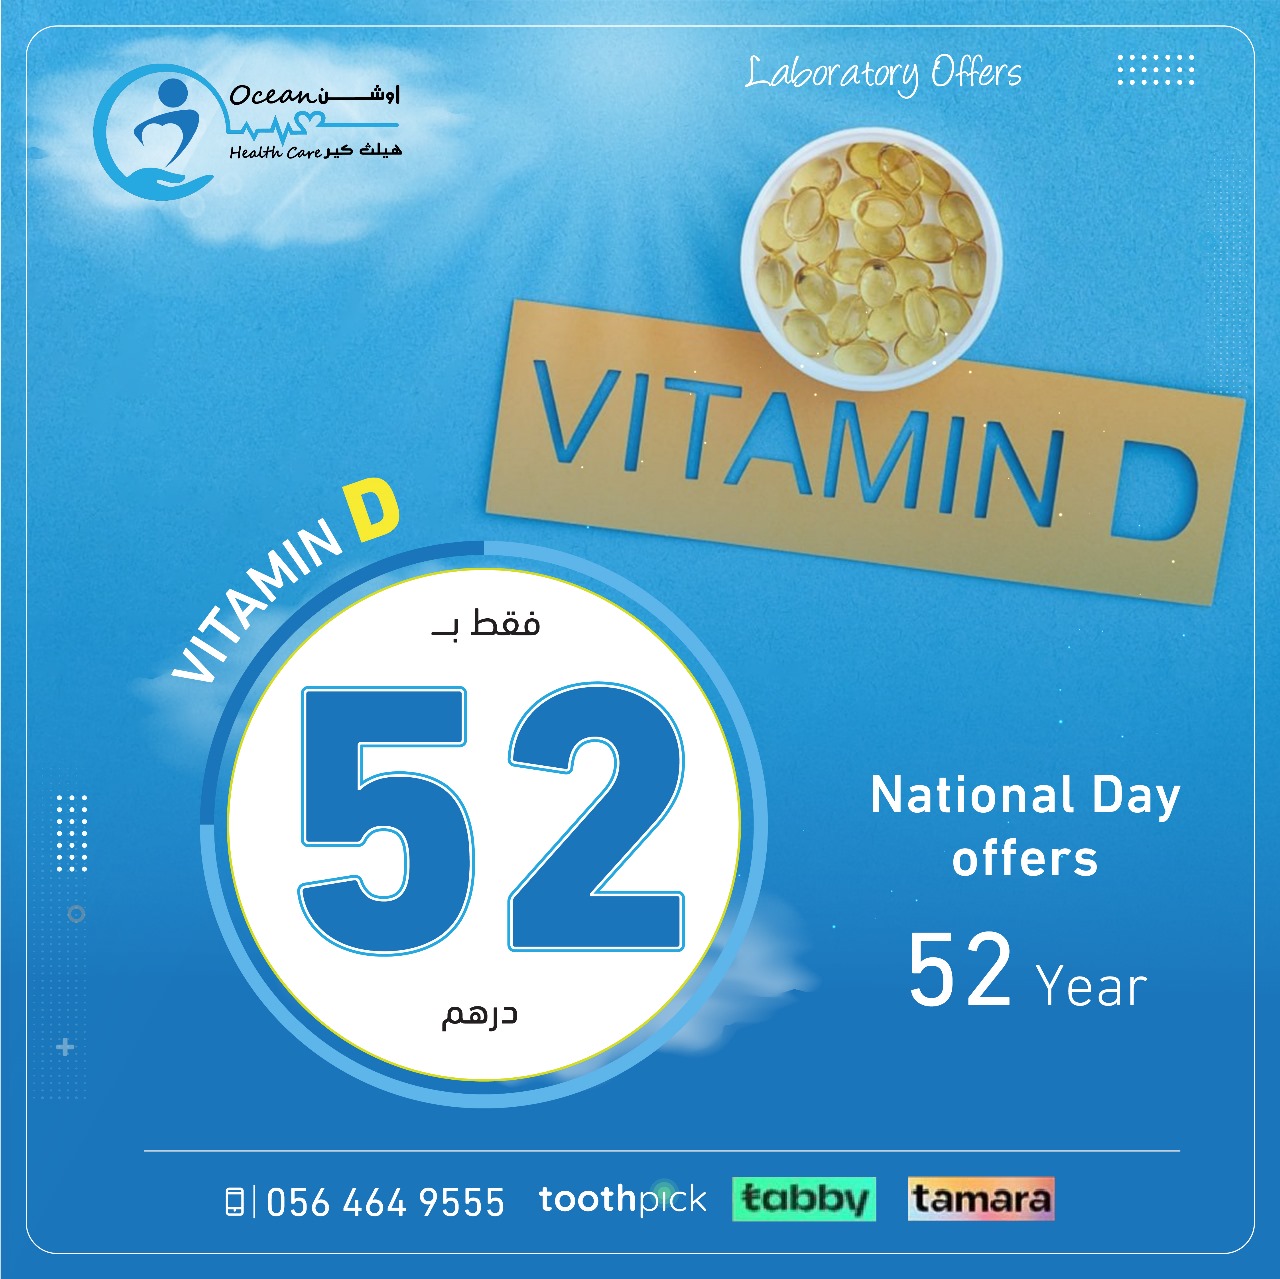 vitamin D blood test offer